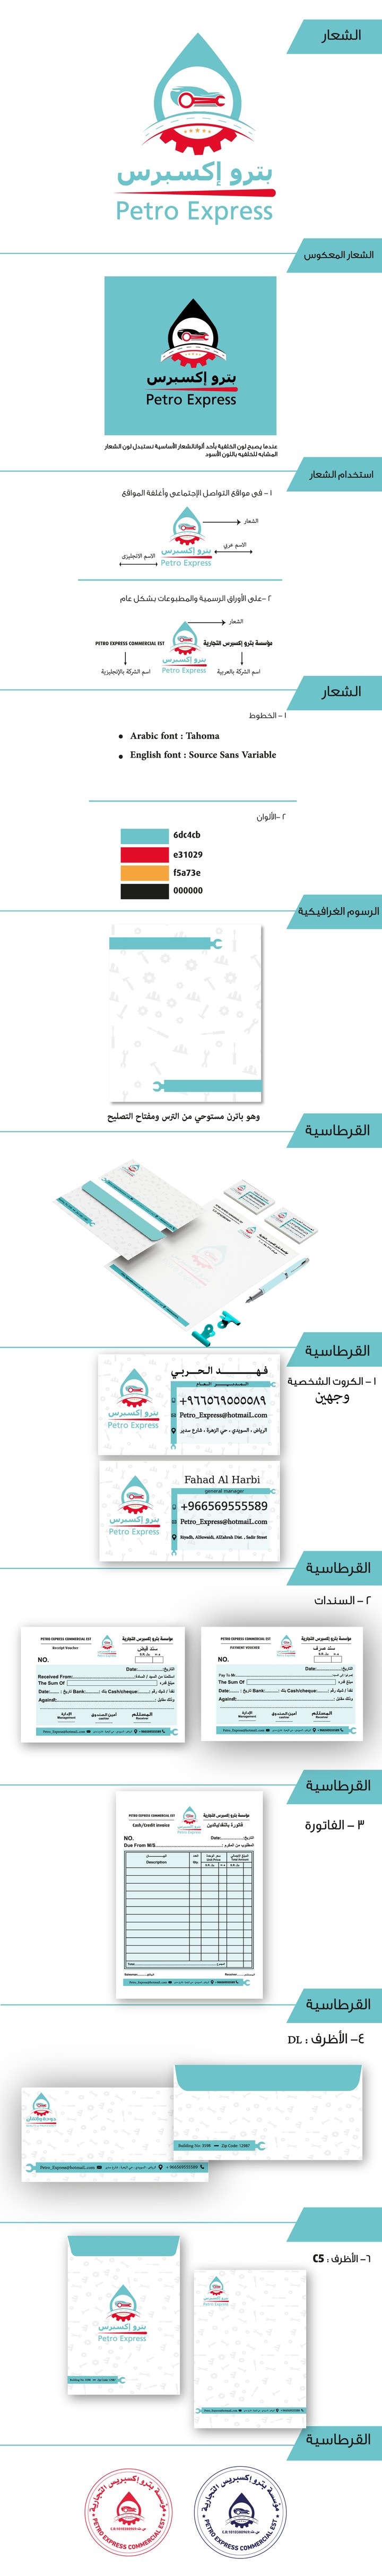 هوية مؤسسة بترو إكسبرس لزيوت السيارات بالمملكة العربية السعودية